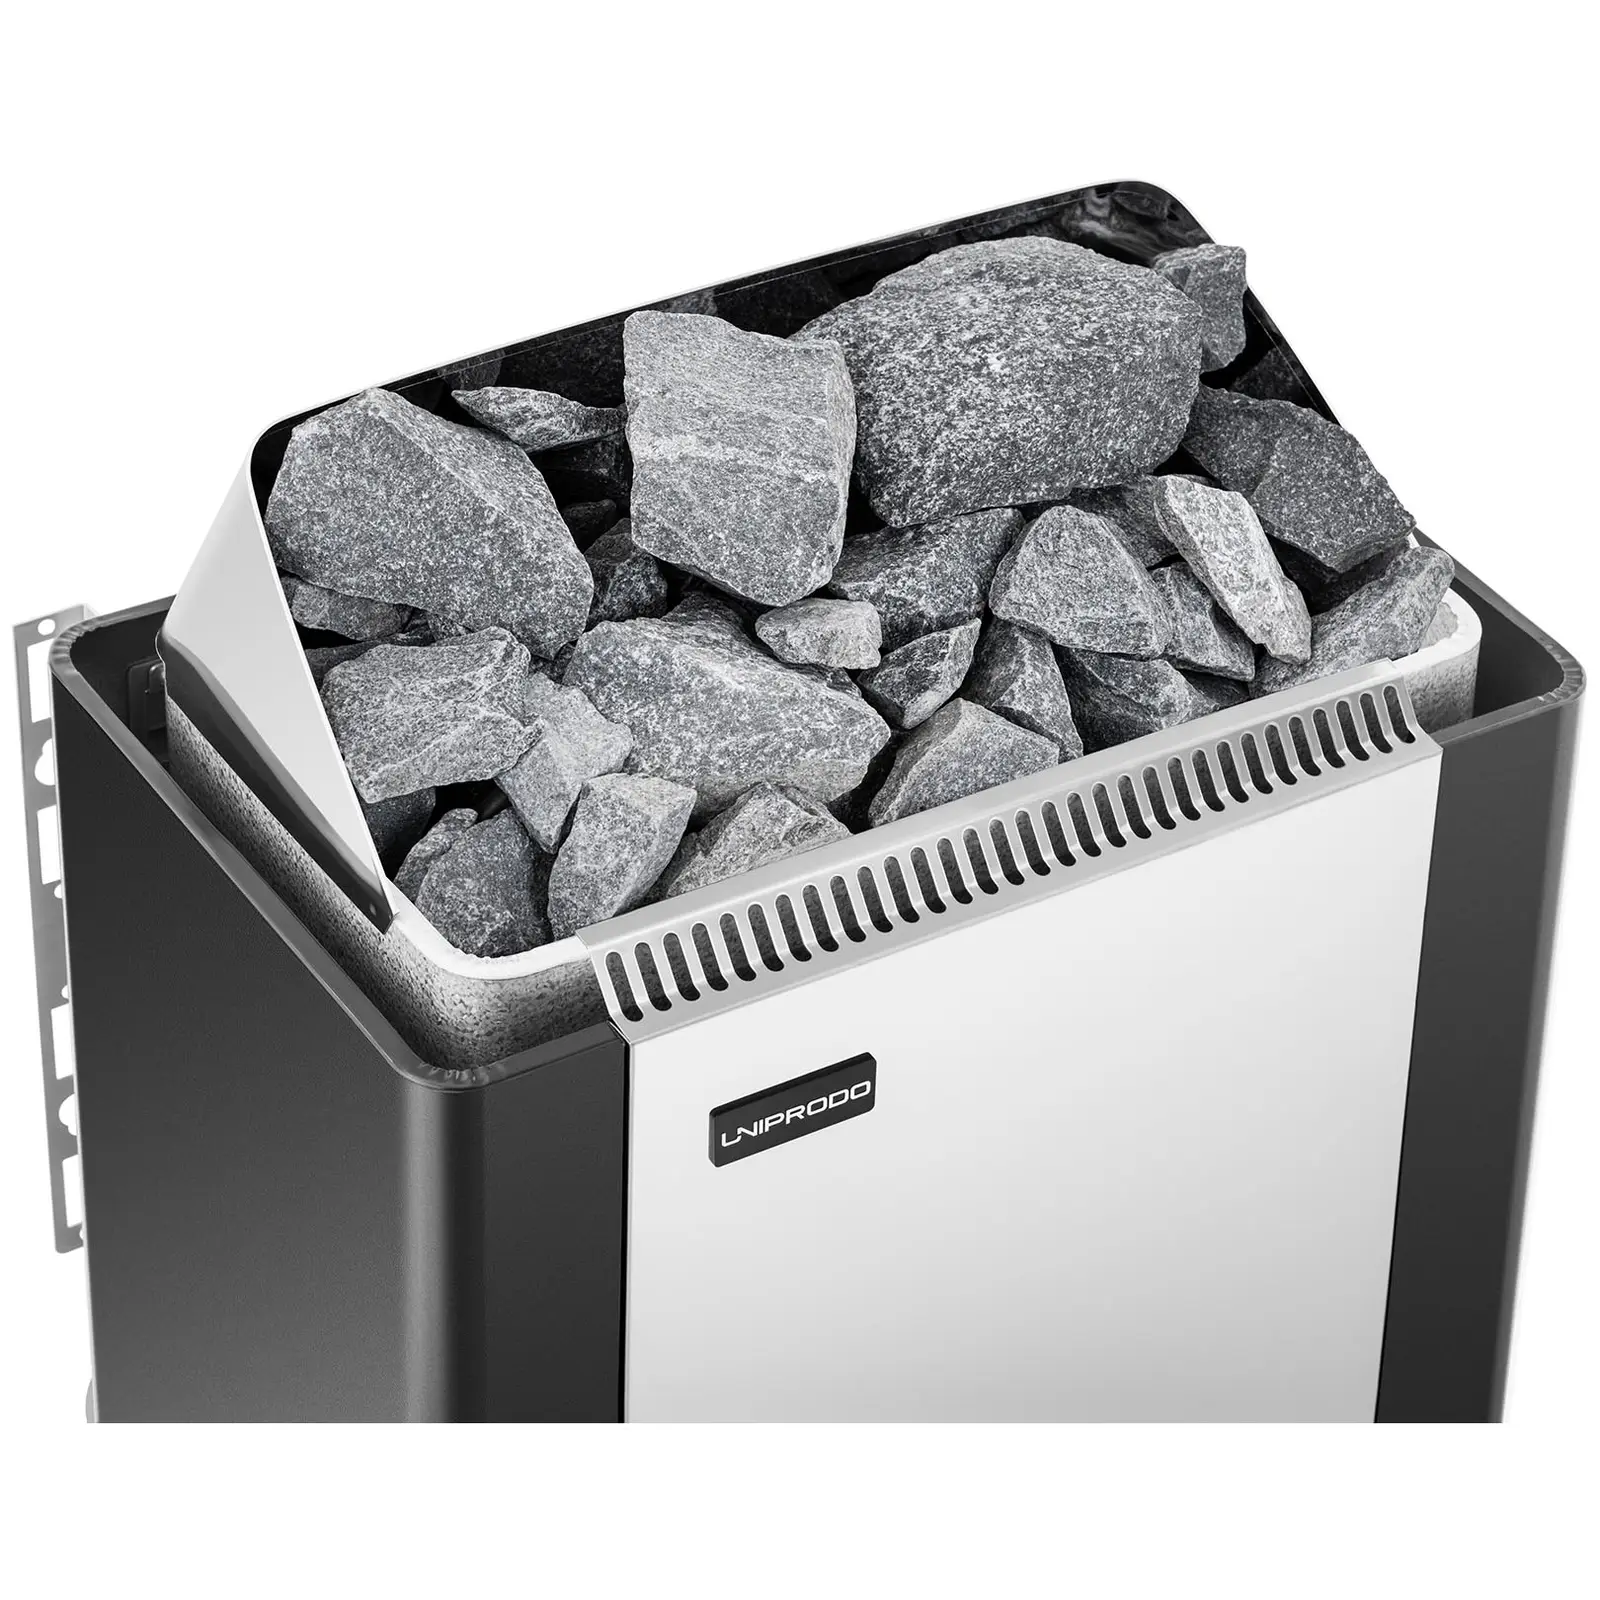 Saunová kamna - 6 kW - 30 až 110 °C - se zabudovaným ovládáním